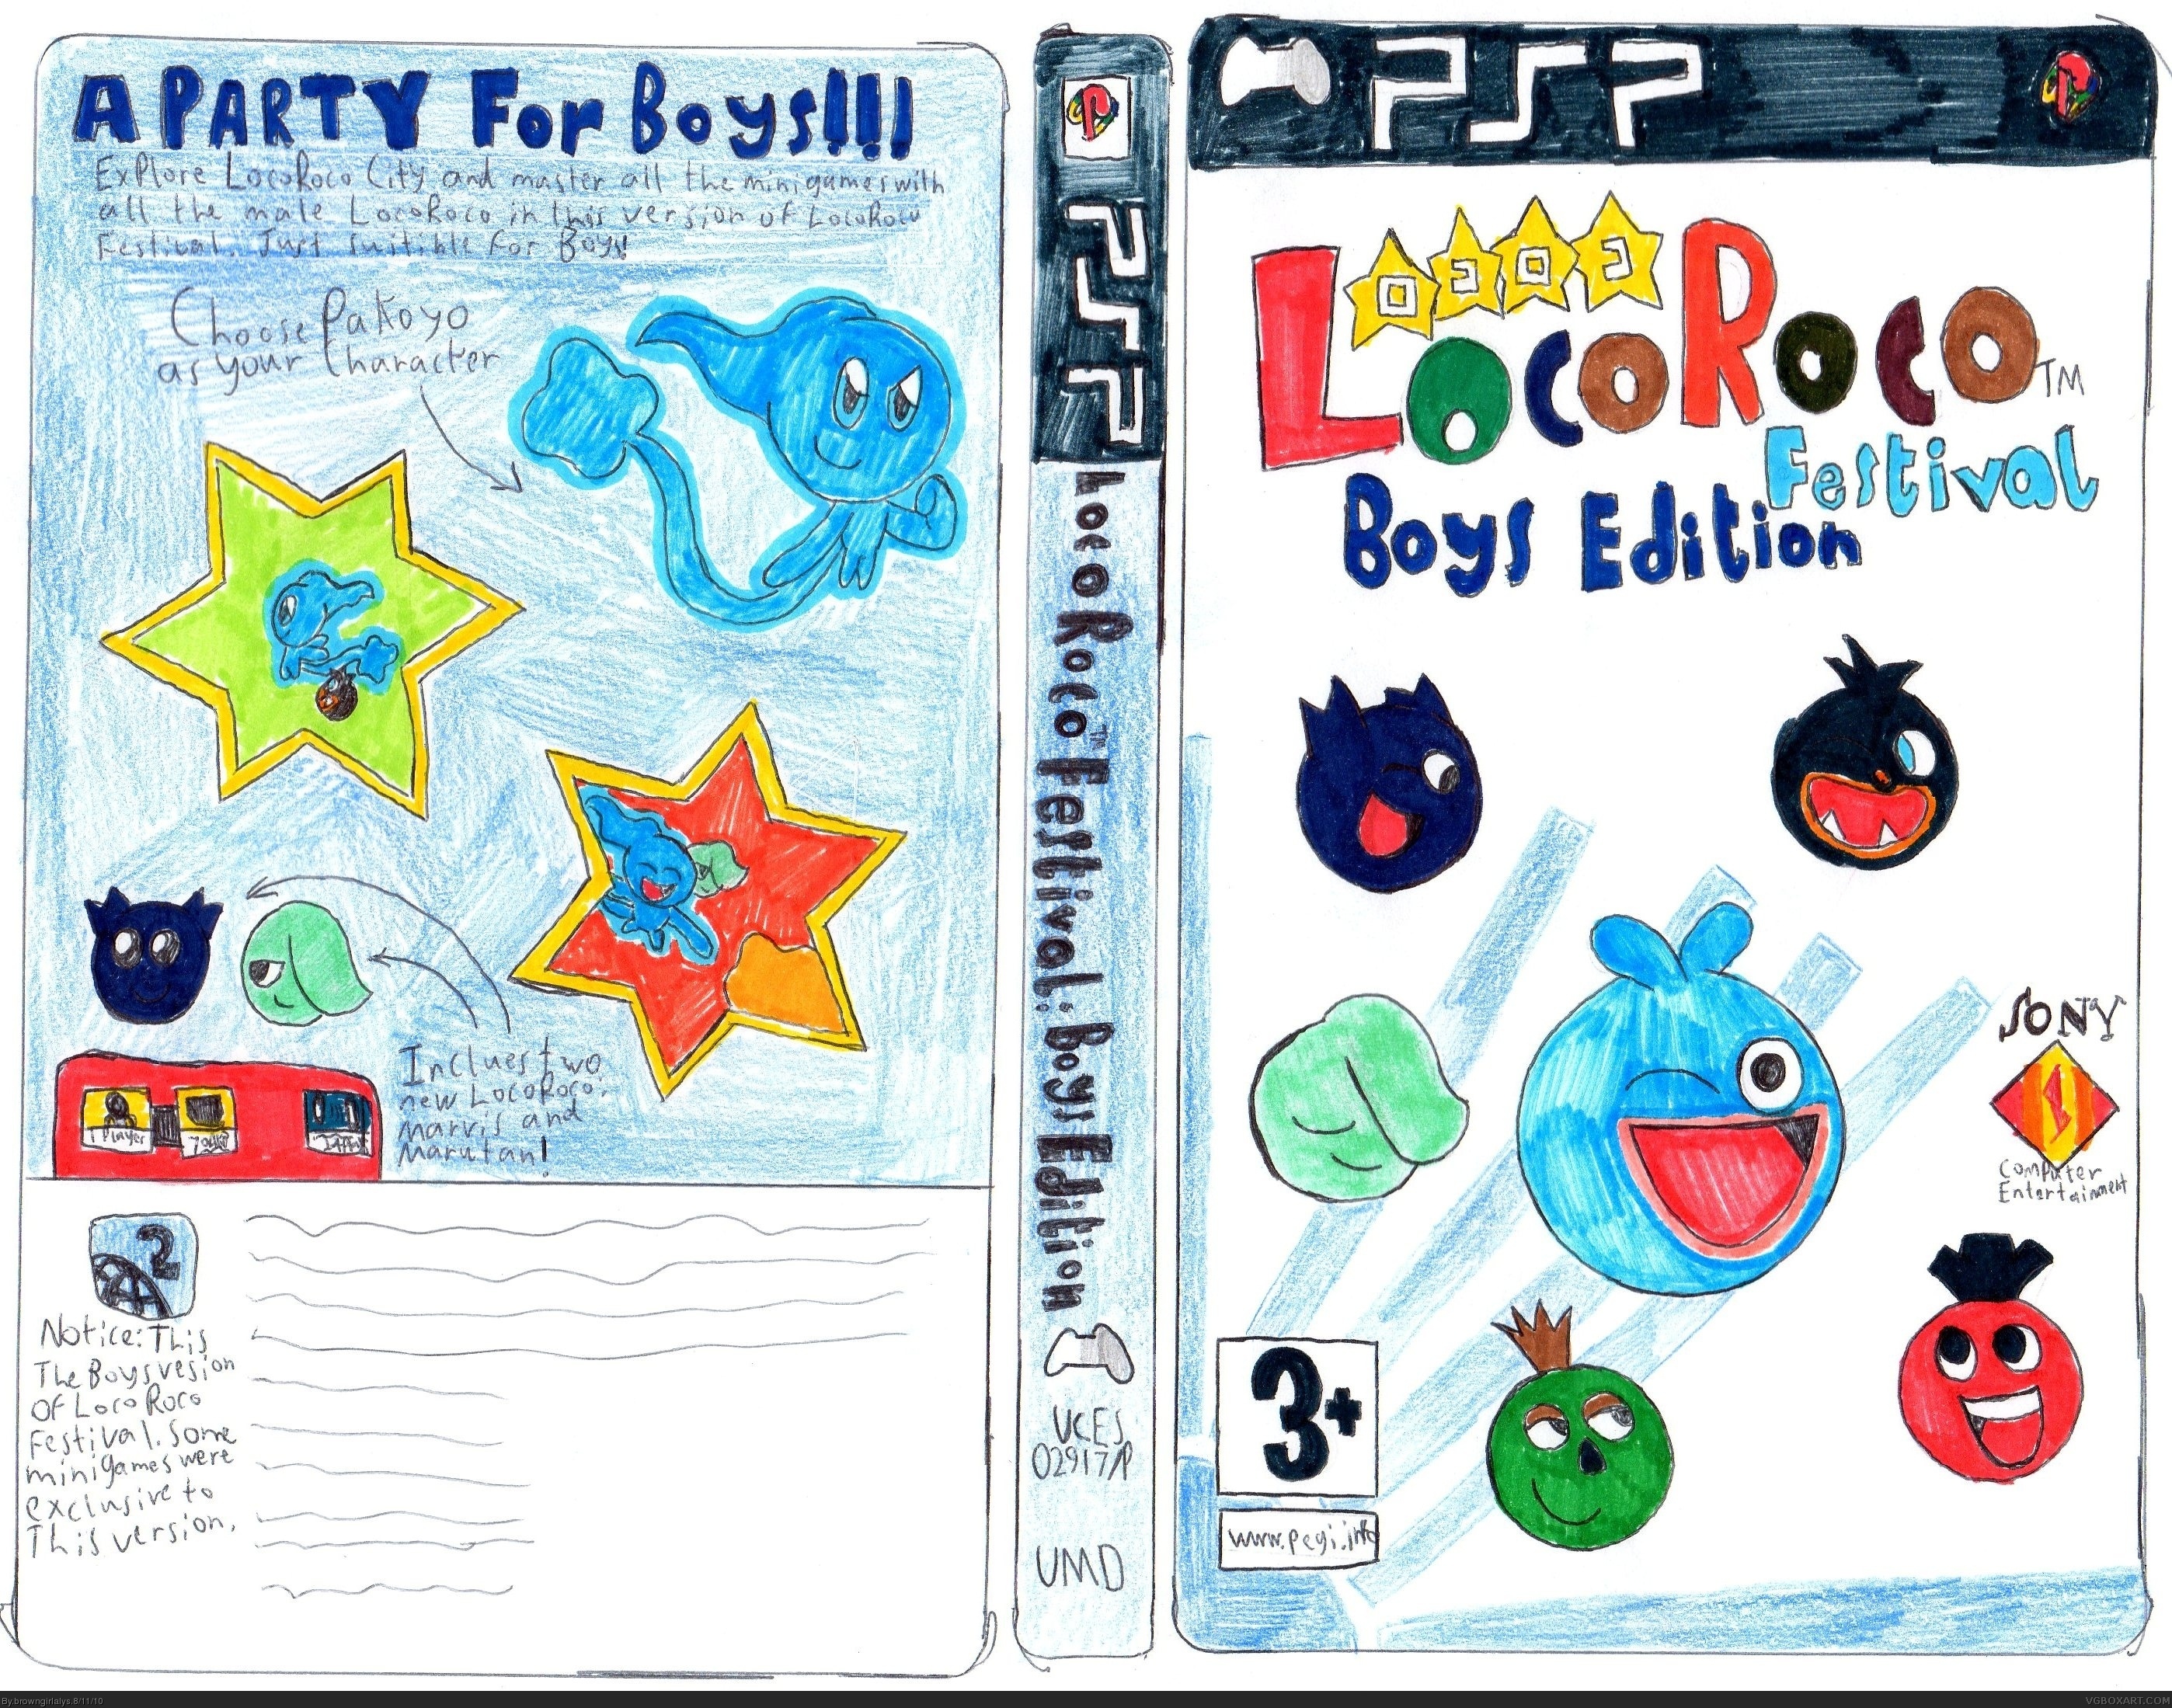 LocoRoco Festival: Boys Edition box cover